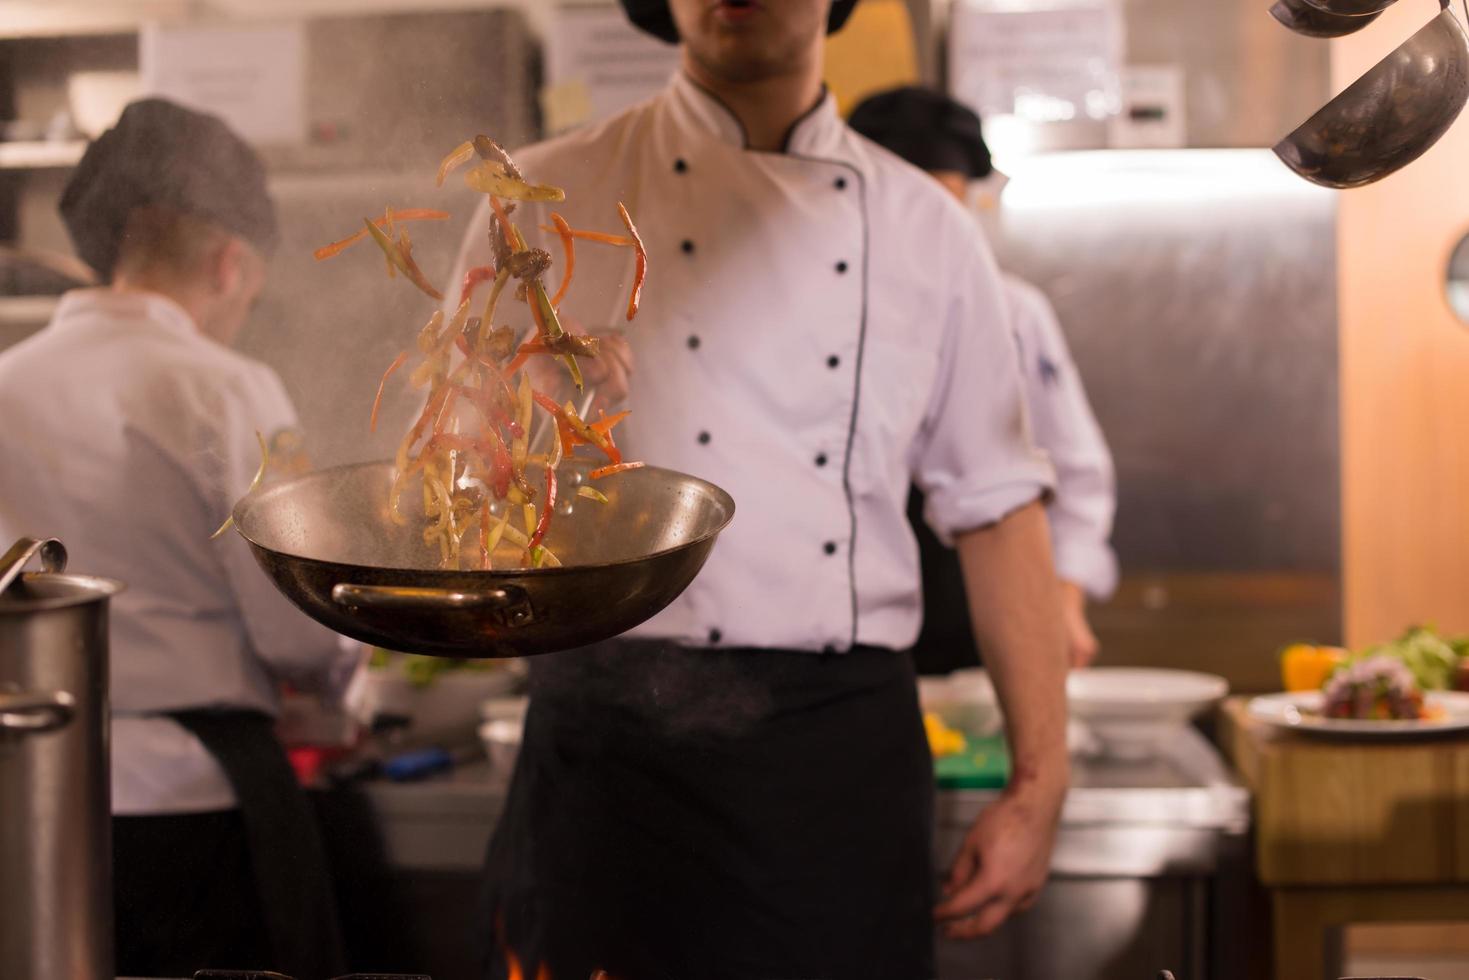 chef volteando verduras en wok foto